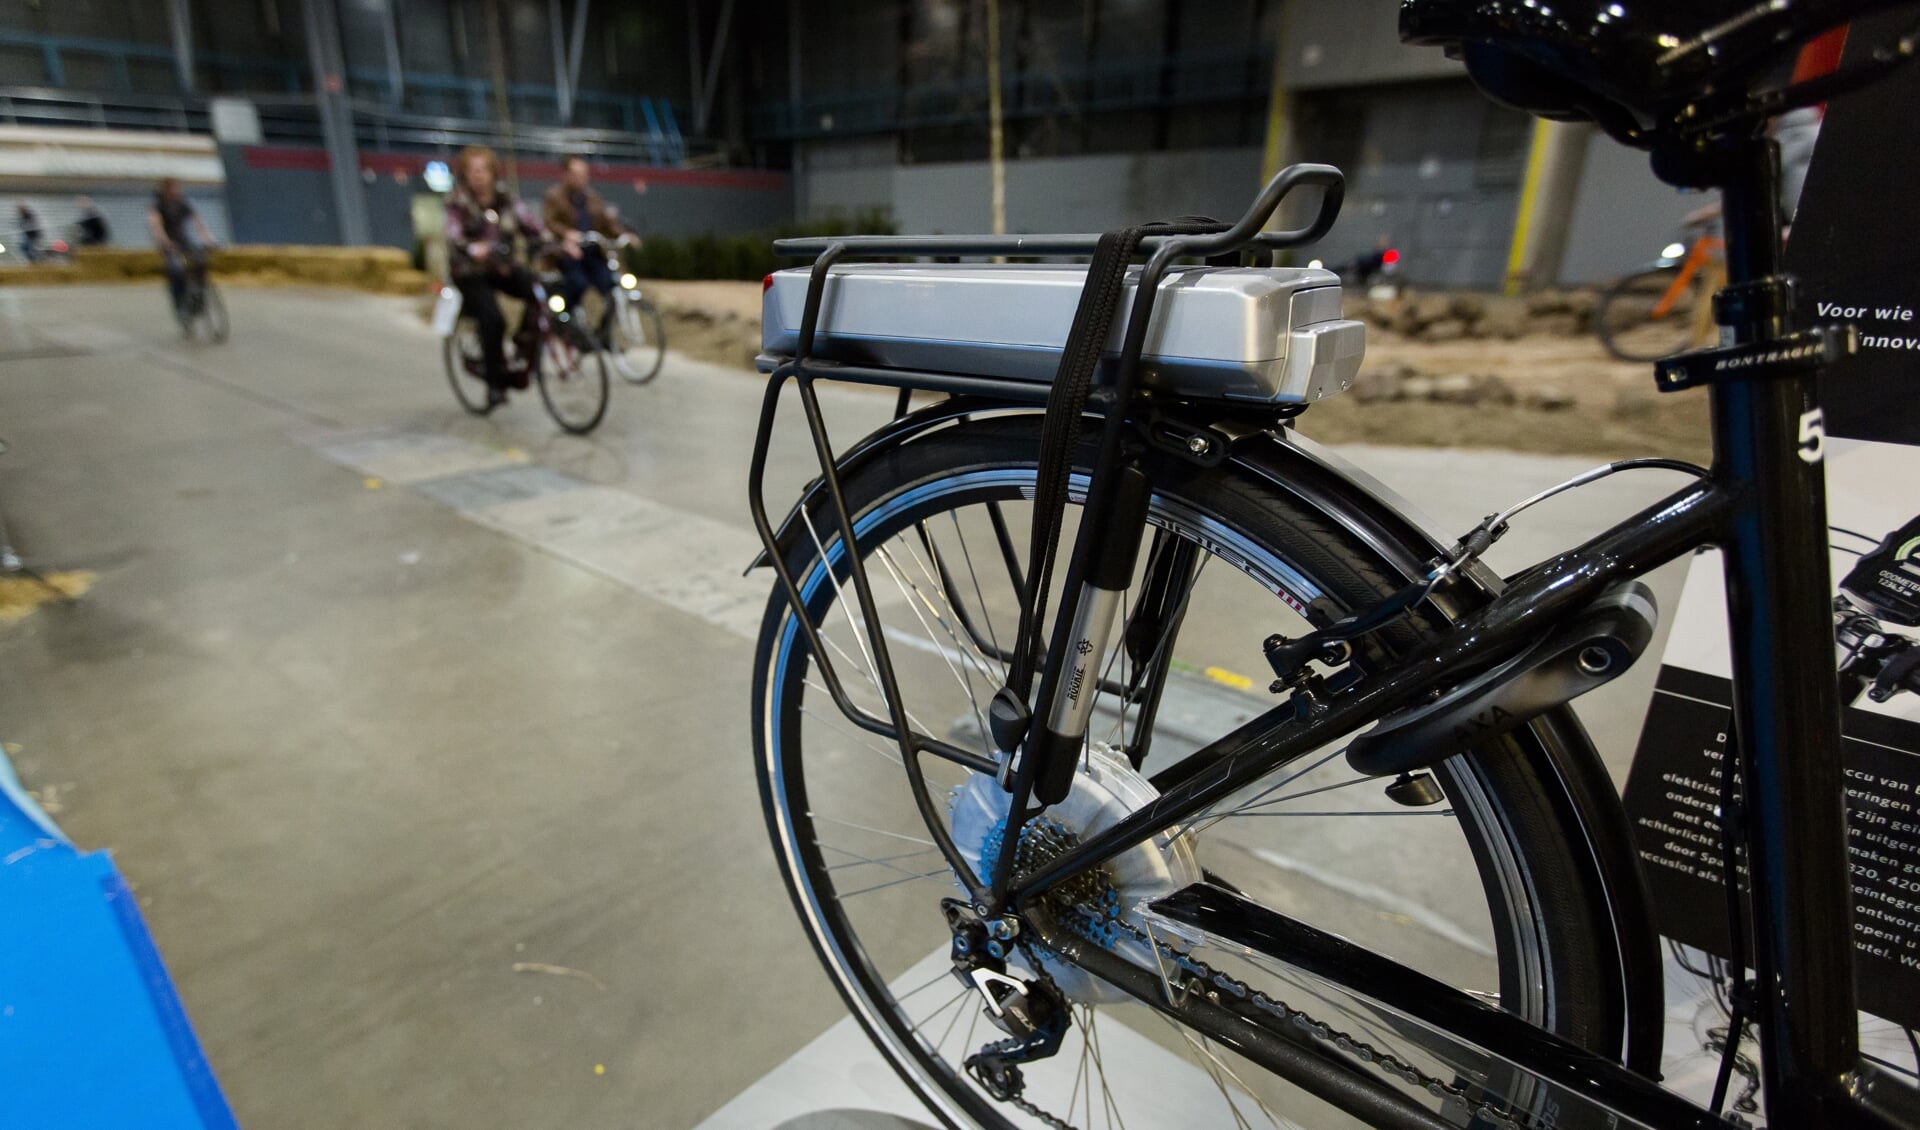 Mislukking Mis Verstikkend Elektrische fiets ook in schuur lang niet altijd veilig' | Nieuws uit de  regio Soest